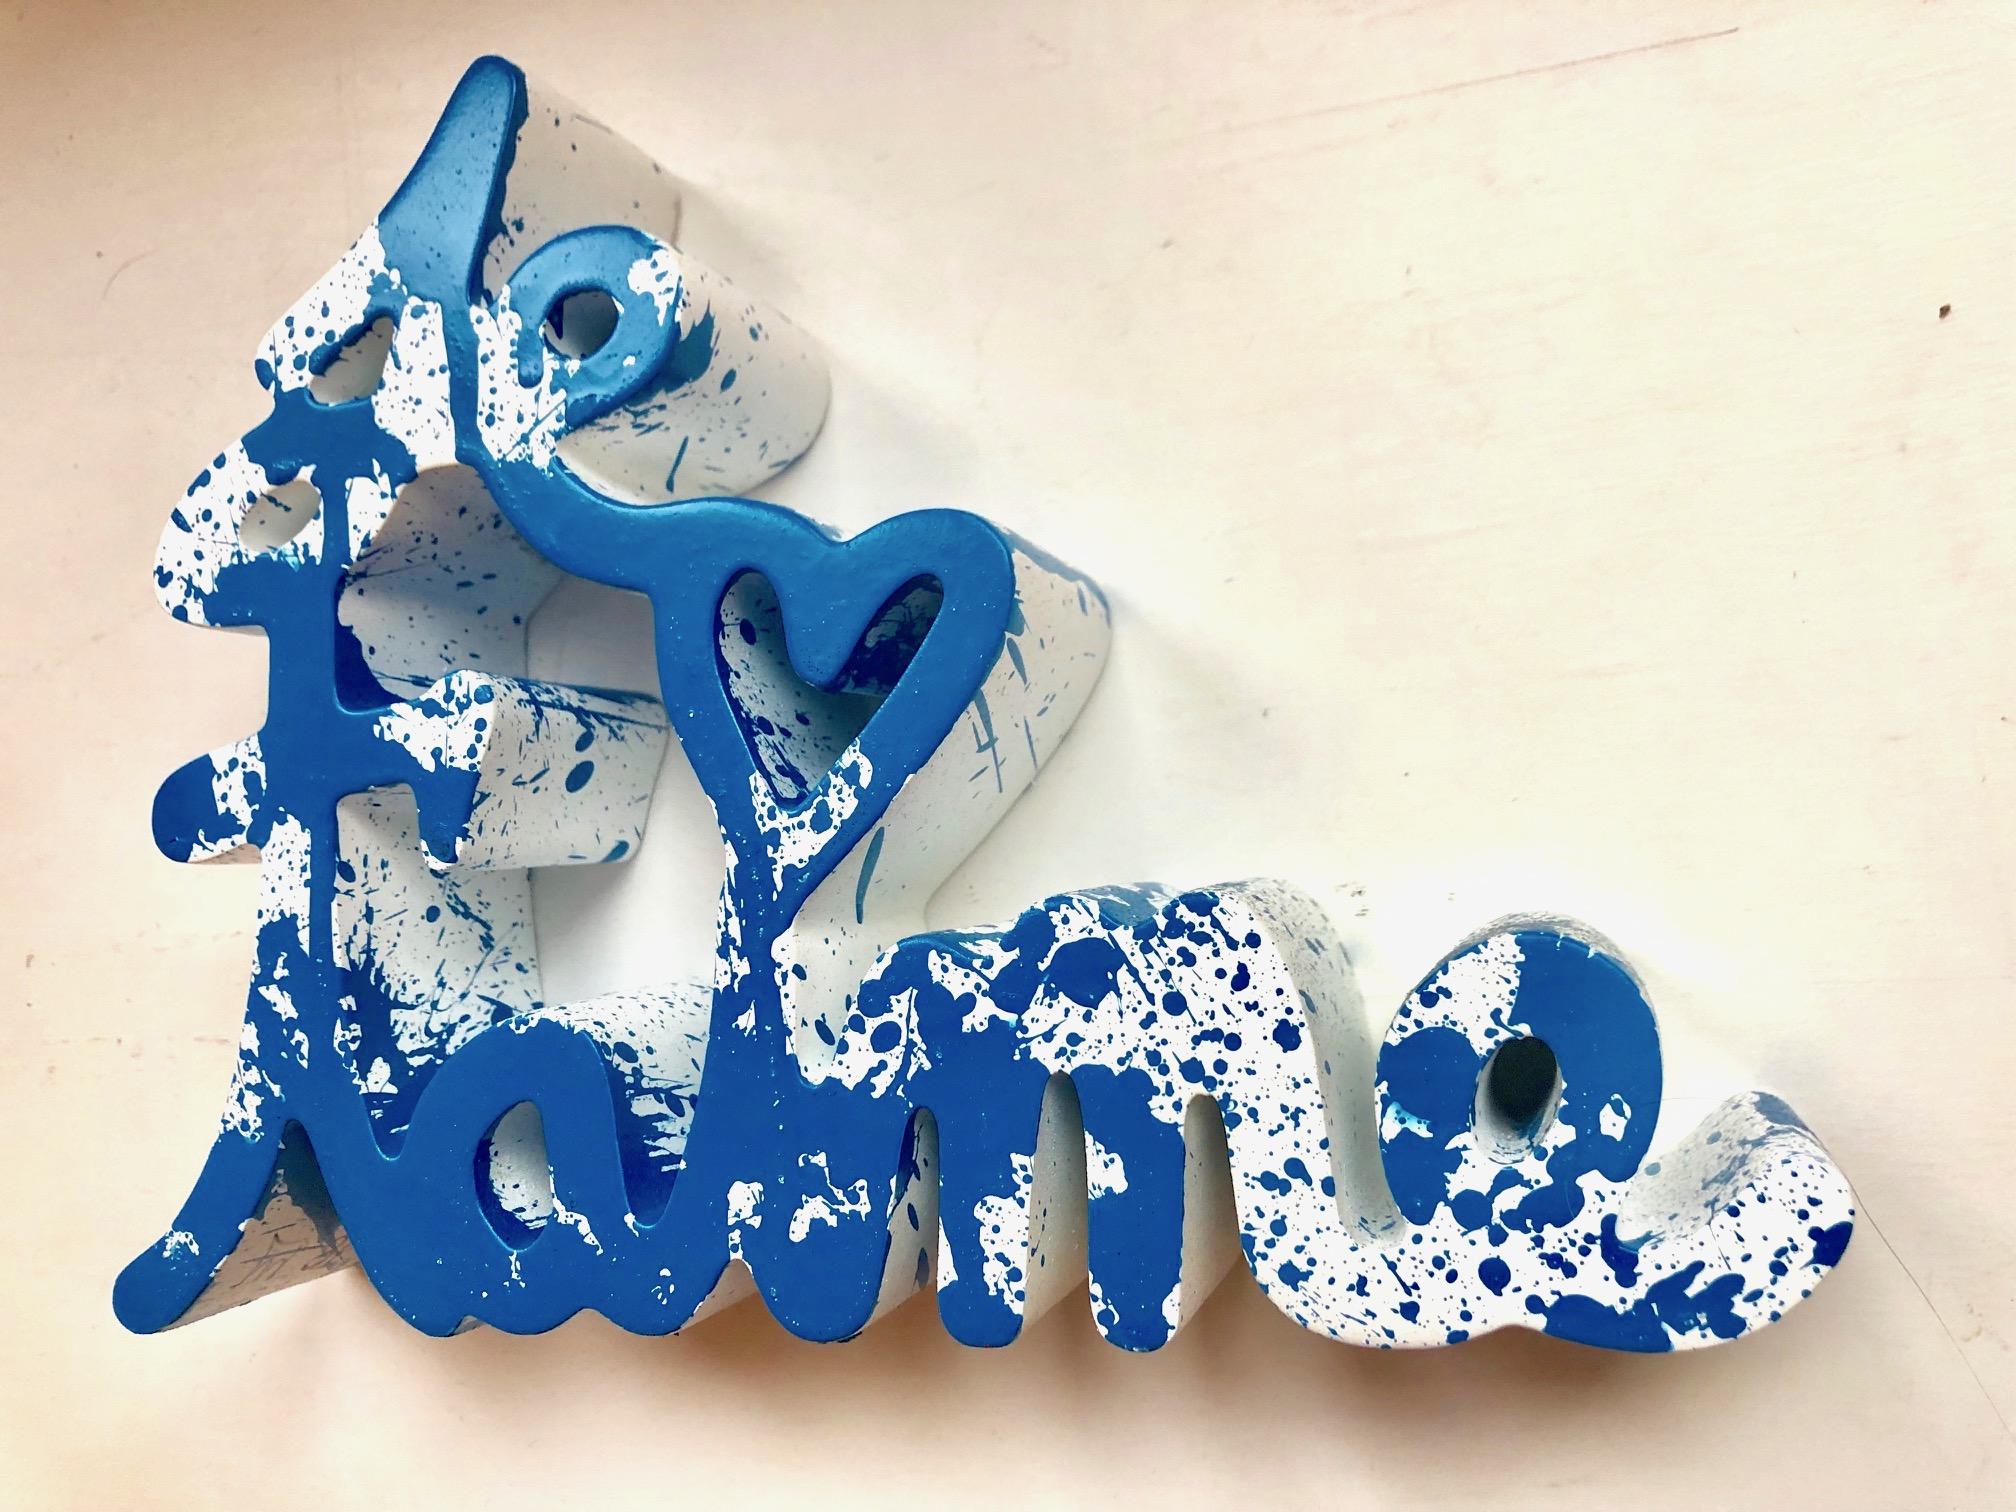 Je t`aime Splash blue - Sculpture by Mr. Brainwash